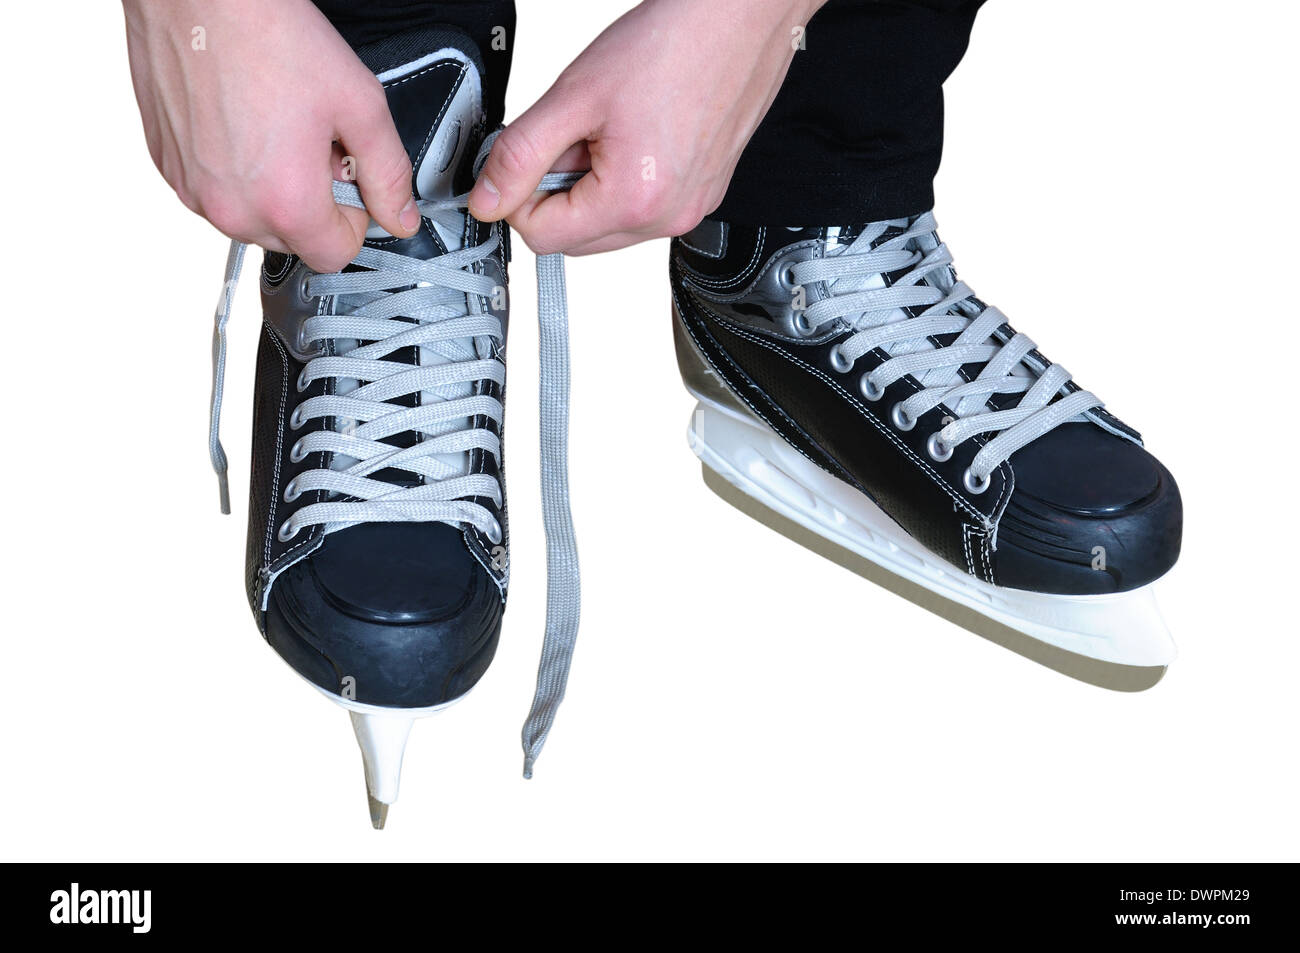 Tying shoelaces on black hockey skates. Isolated on white Stock Photo